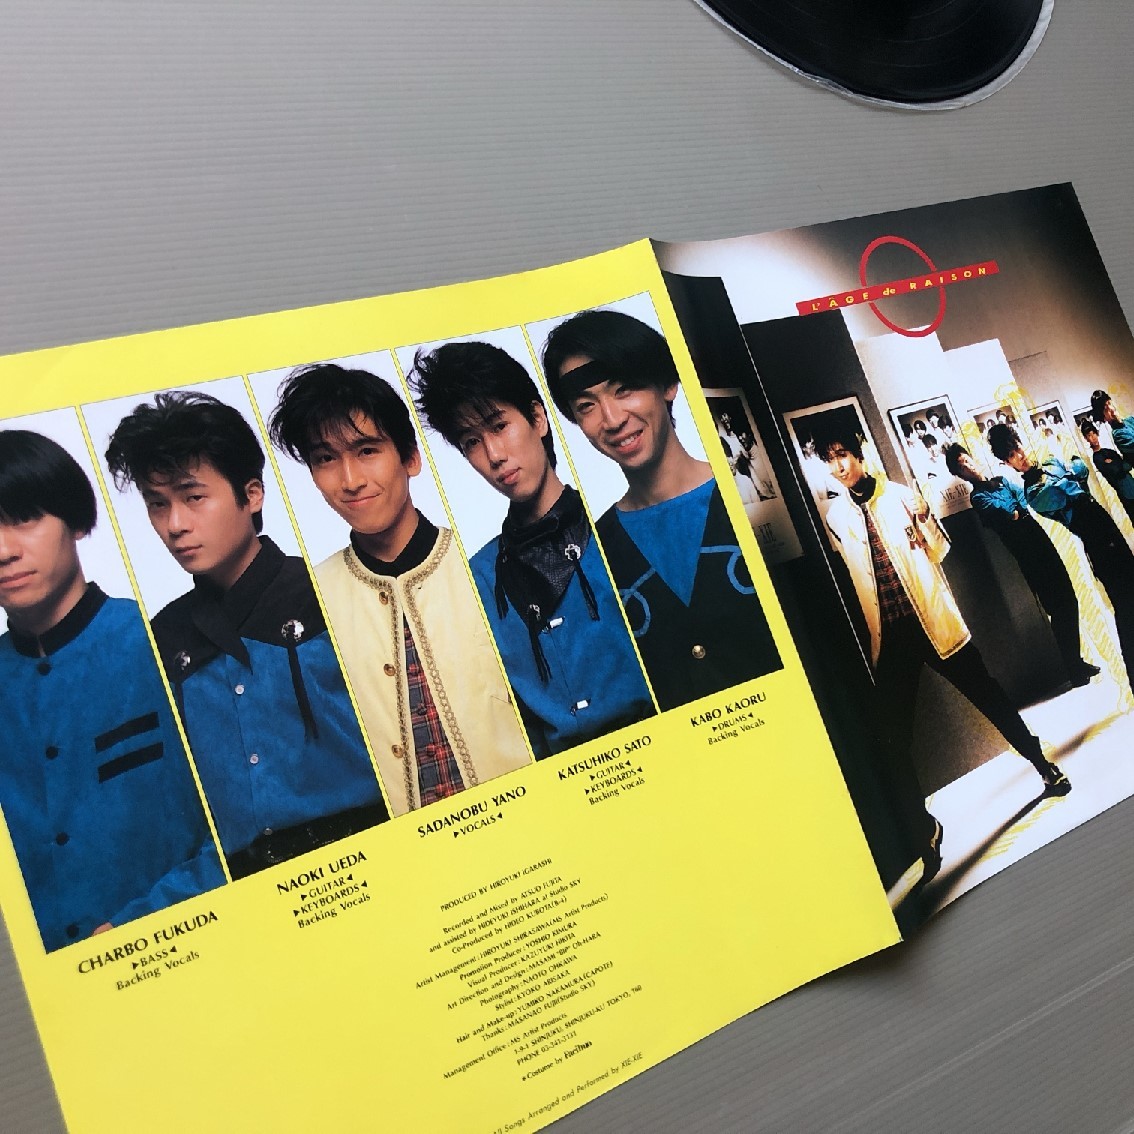 傷なし美盤 レア盤 シェーシェ Xie-Xie 1987年 LPレコード 分別ざかり L'AGE de RAISON 国内盤 オリジナルリリース盤 帯付 J-Pop_画像6